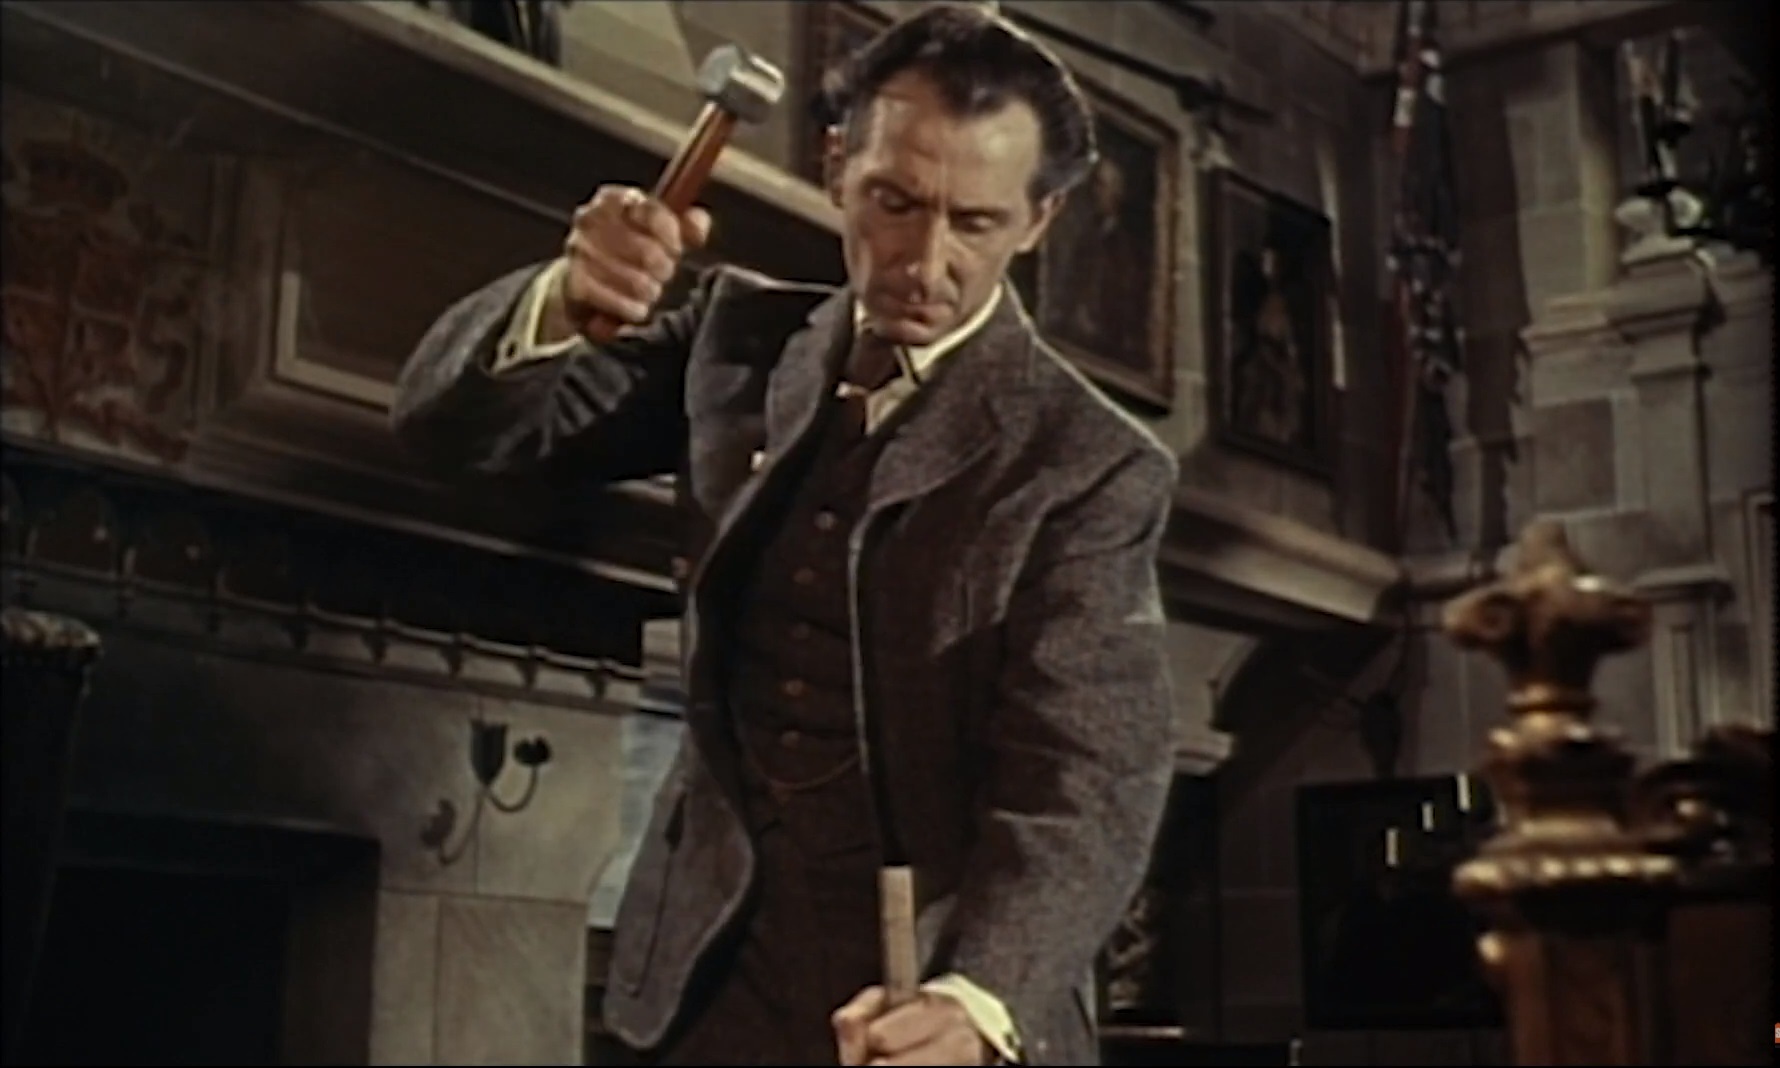 Peter Cushing as Van Helsing in the Hammer horror film Brides of Dracula